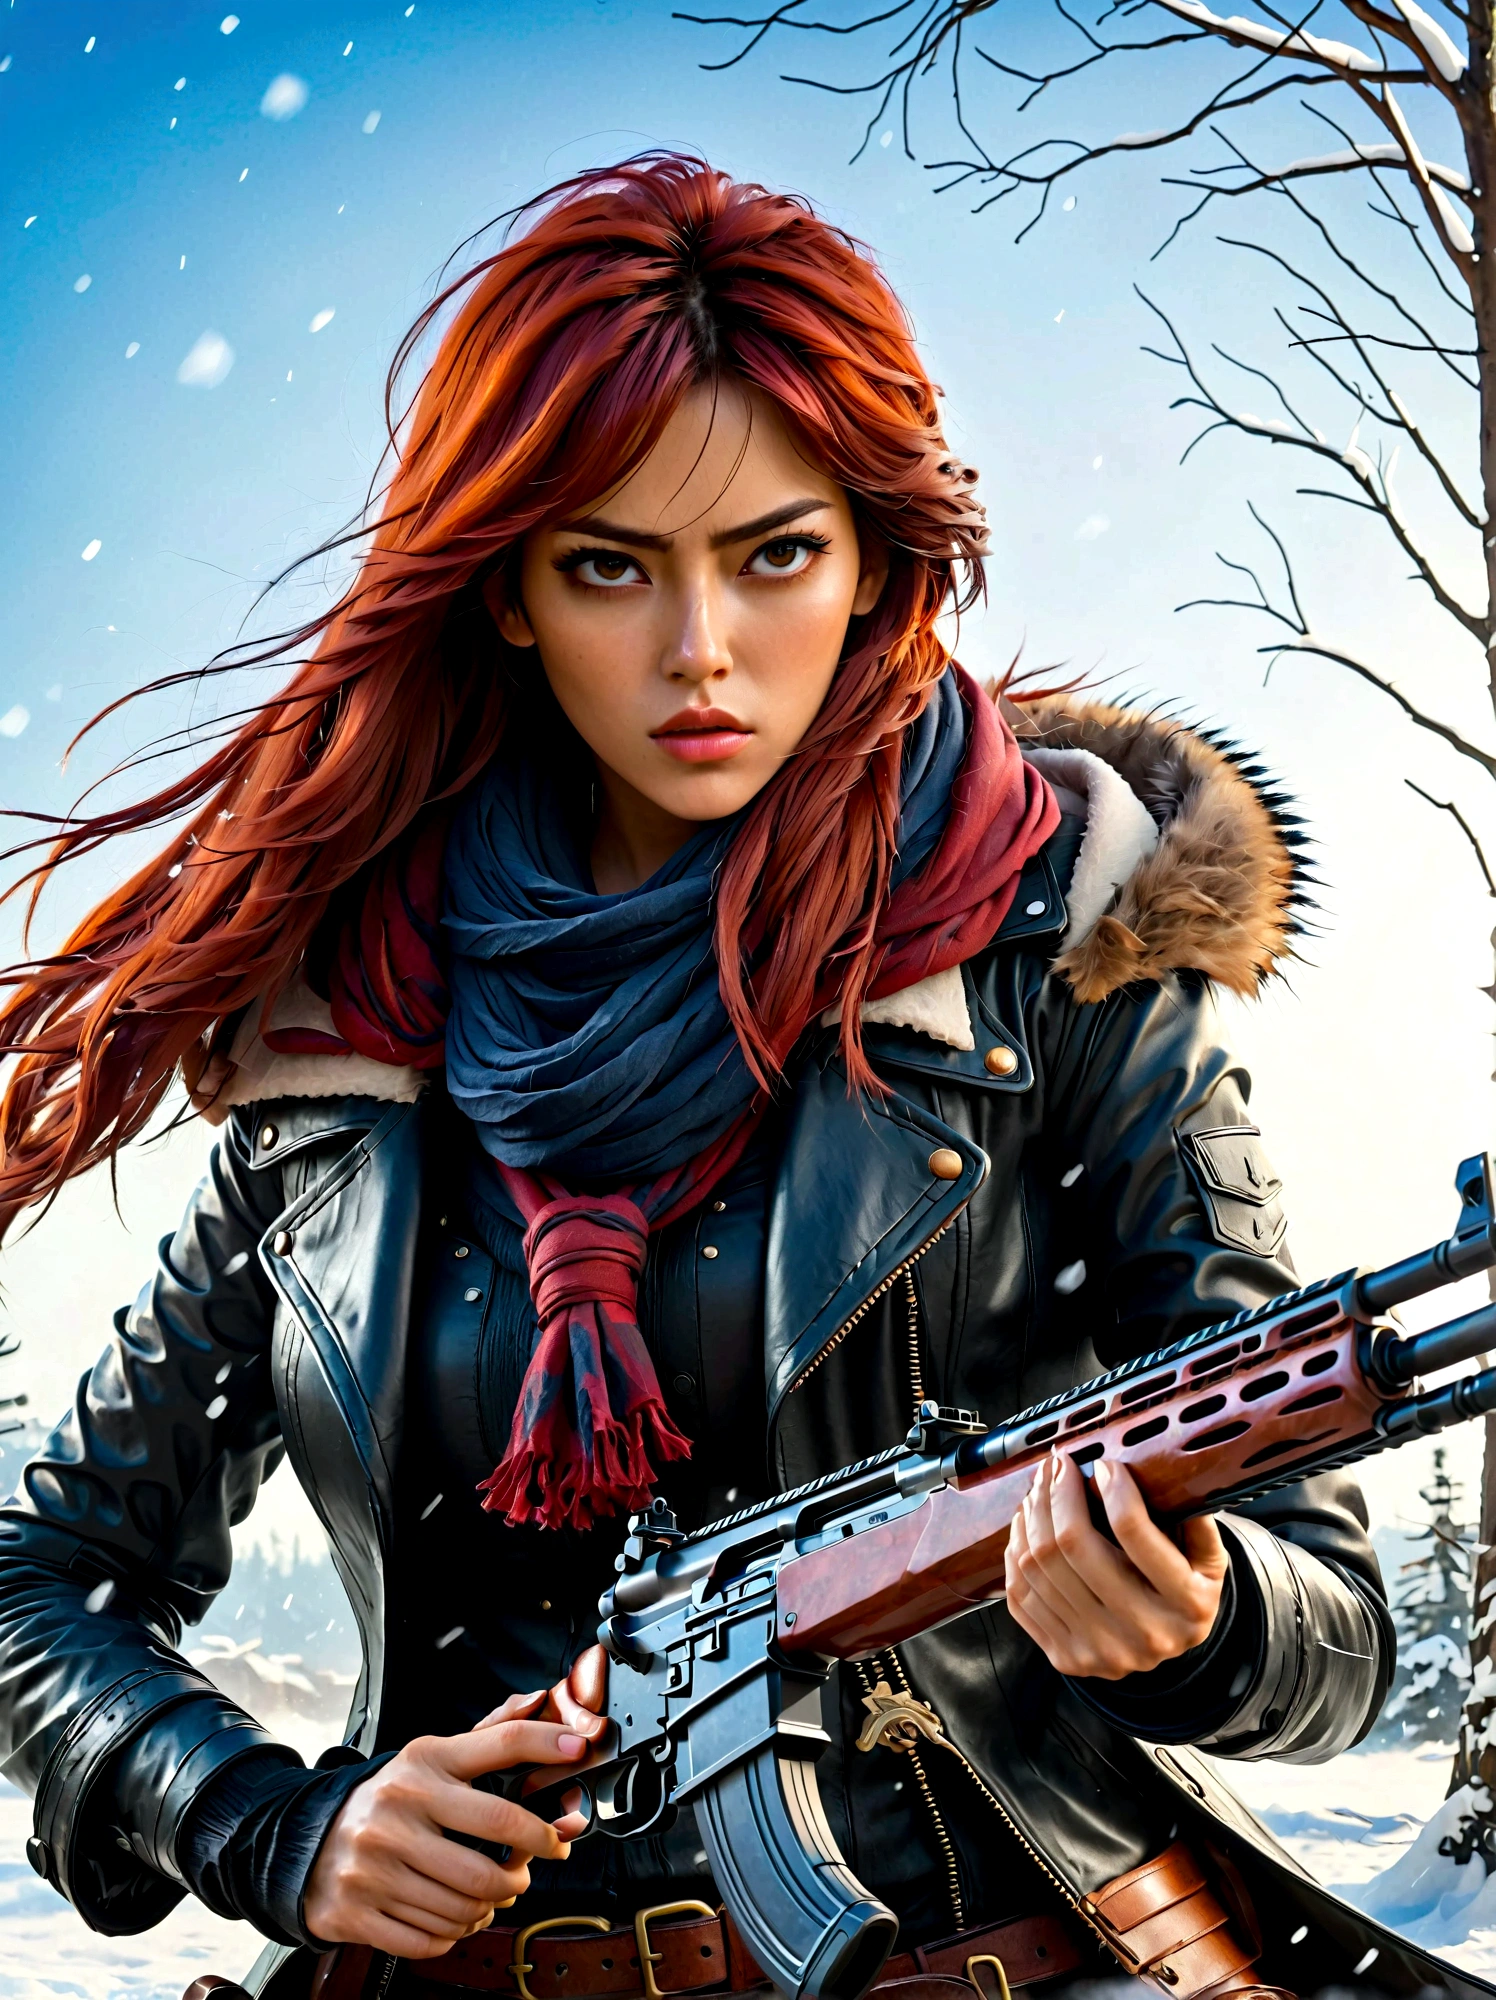 فتاة تحمل بندقية, (نظرة بالاشمئزاز:1.5), وضعية قتال الثلج, شرق, النصل والروح, نمط الحبر, شعر احمر طويل, معاطف جلدية وفراء, بارد, عمل فني, 3D, 4K, مفصلة, عملي